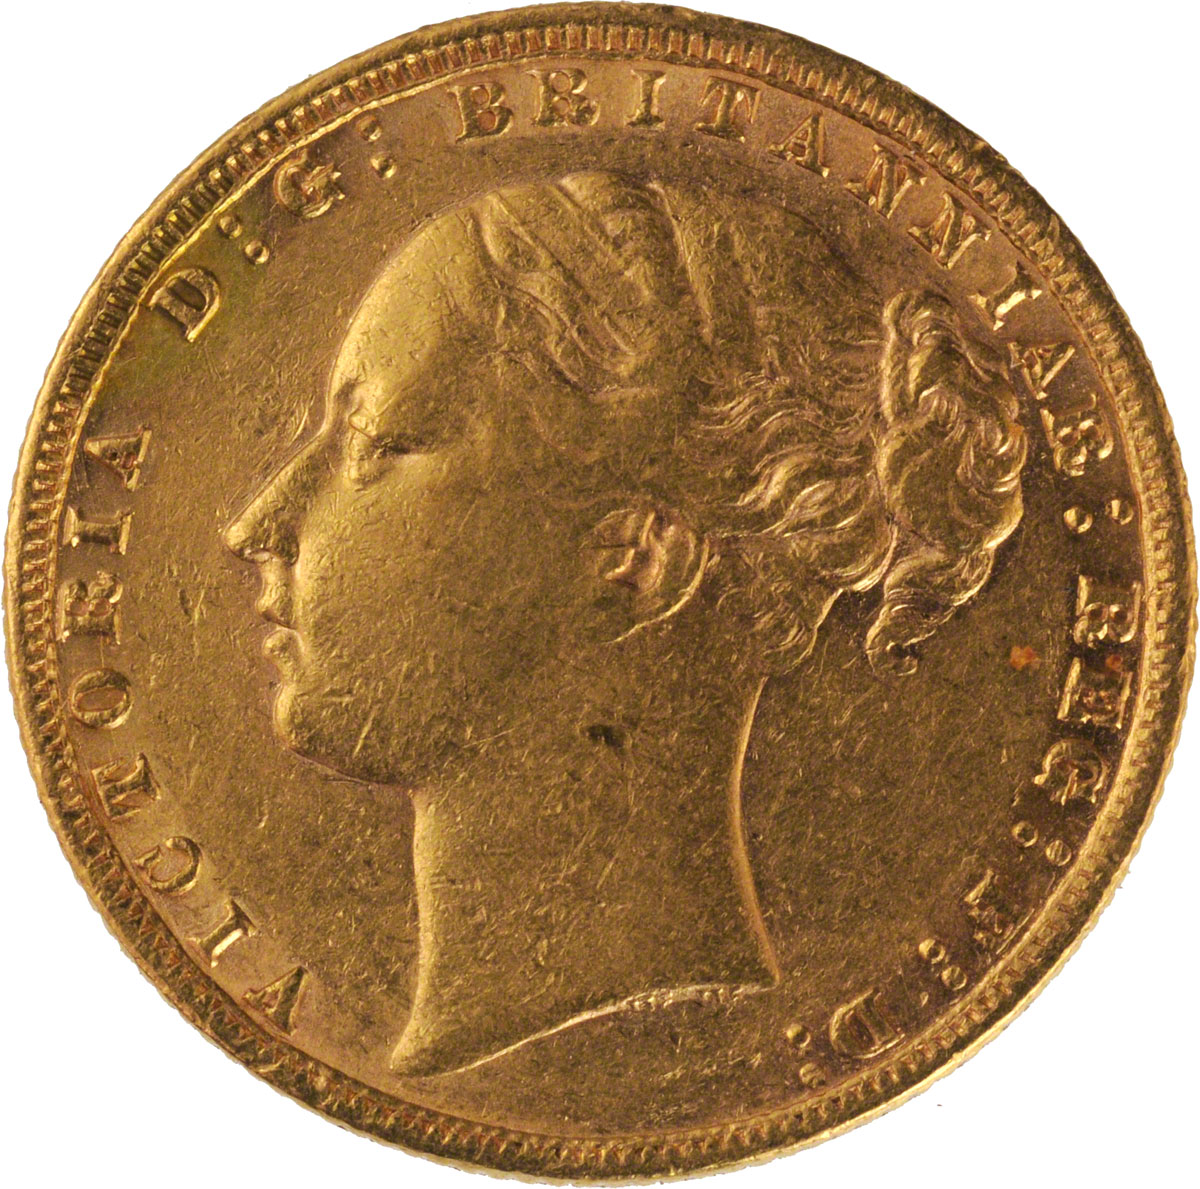 1874 Βικτώρια (Νομισματοκοπείο Λονδίνου)